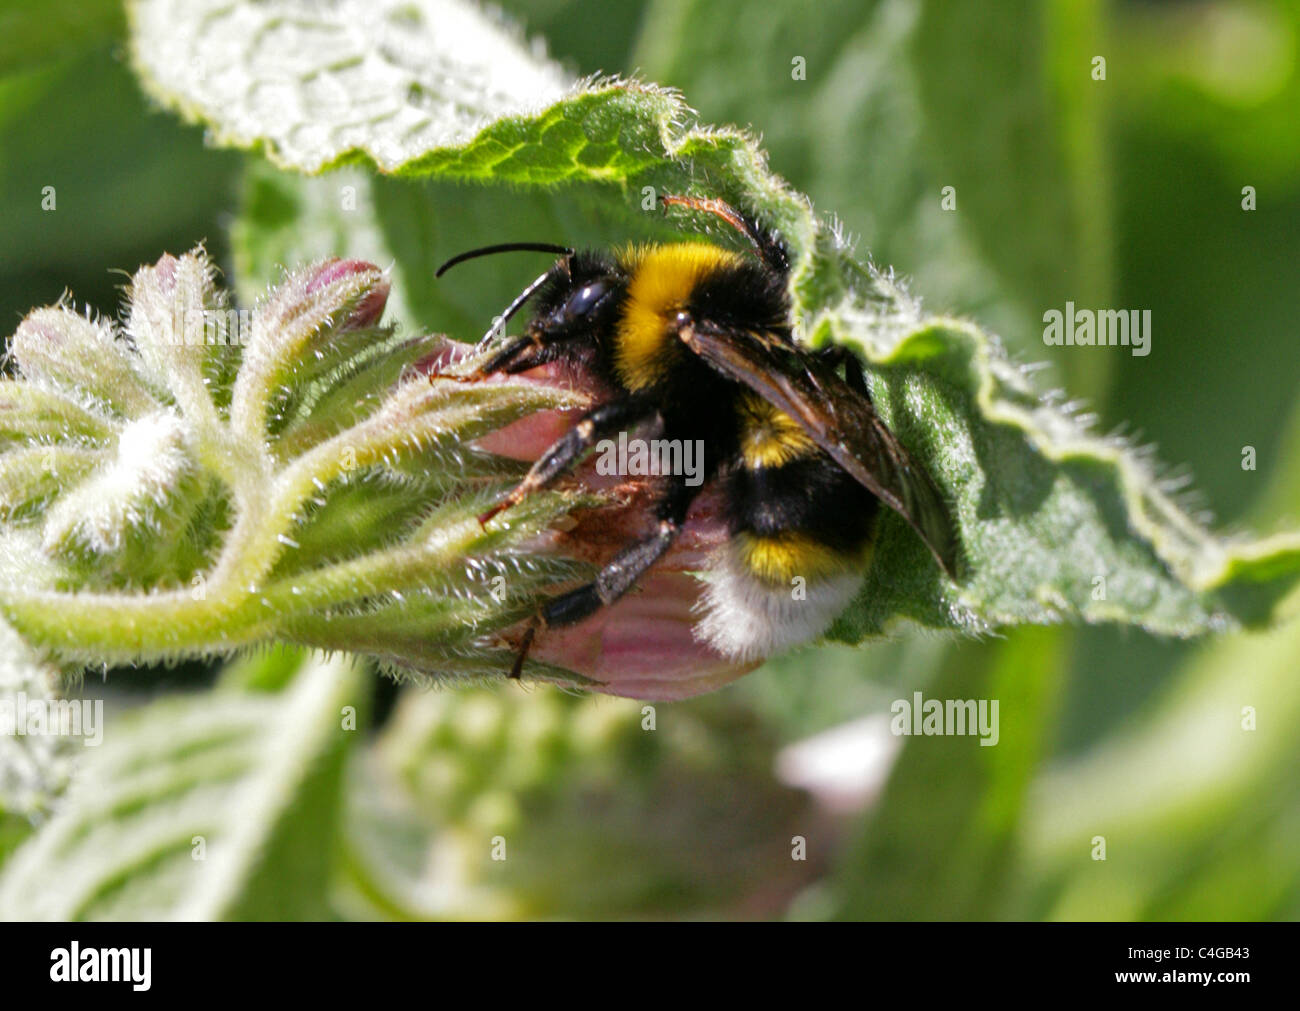 Southern Cuckoo Bumblebee, Bombus vestalis, Apinae, Apidae, Apoidea, Apocrita, Hymenoptera. Syn. Psithyrus vestalis. Stock Photo